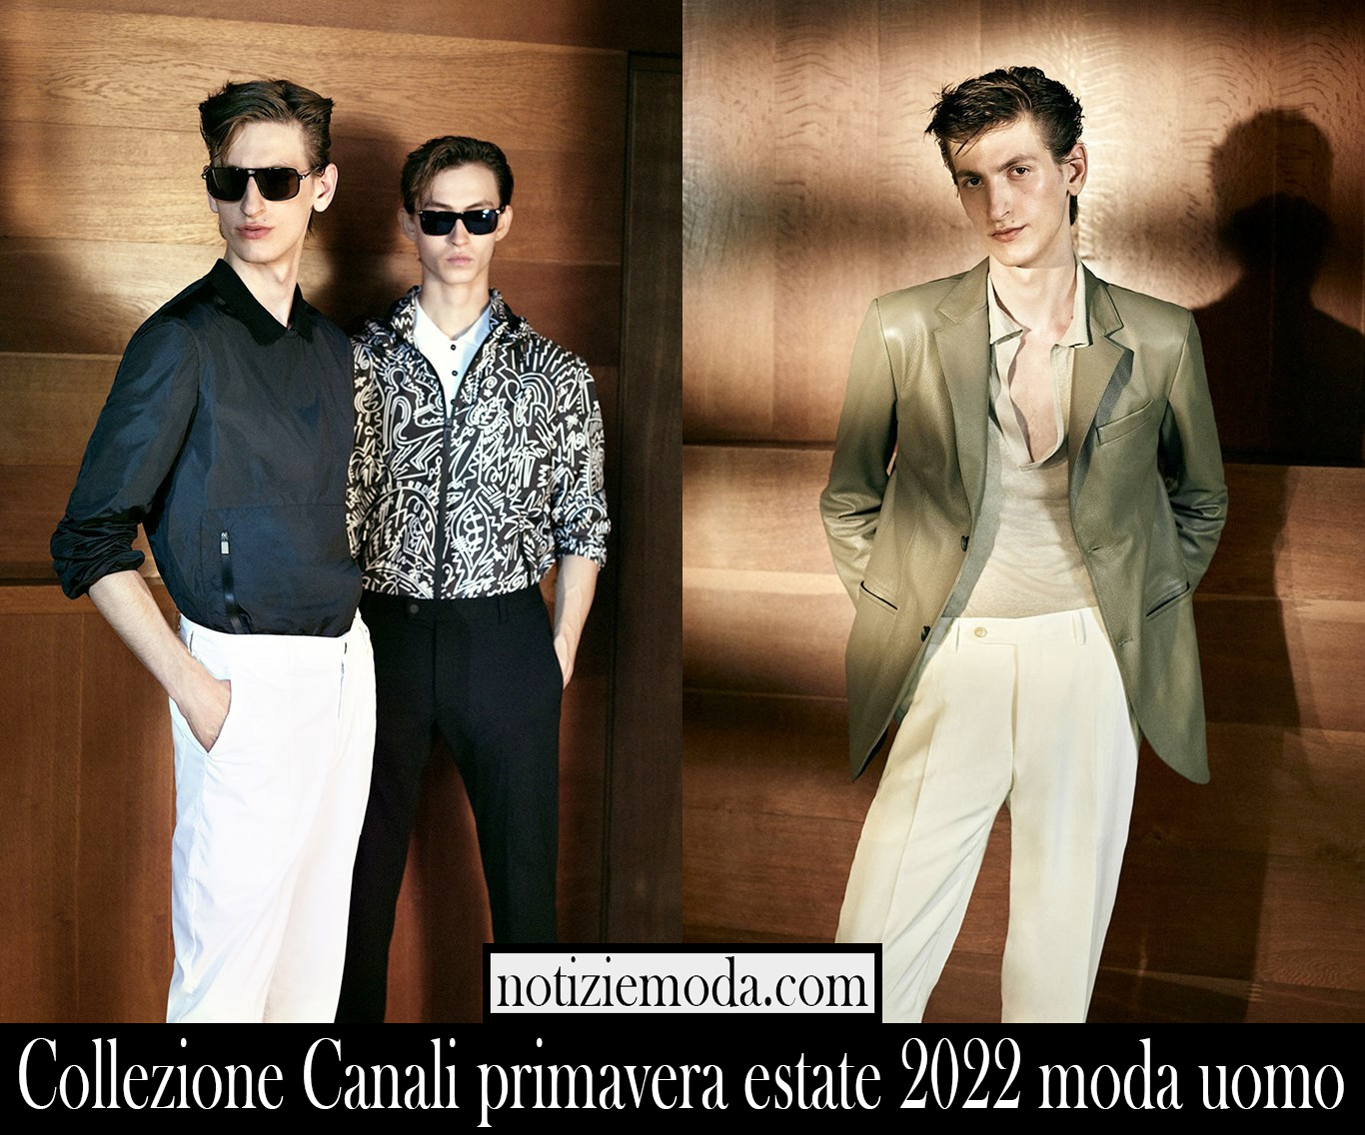 Collezione Canali primavera estate 2022 moda uomo